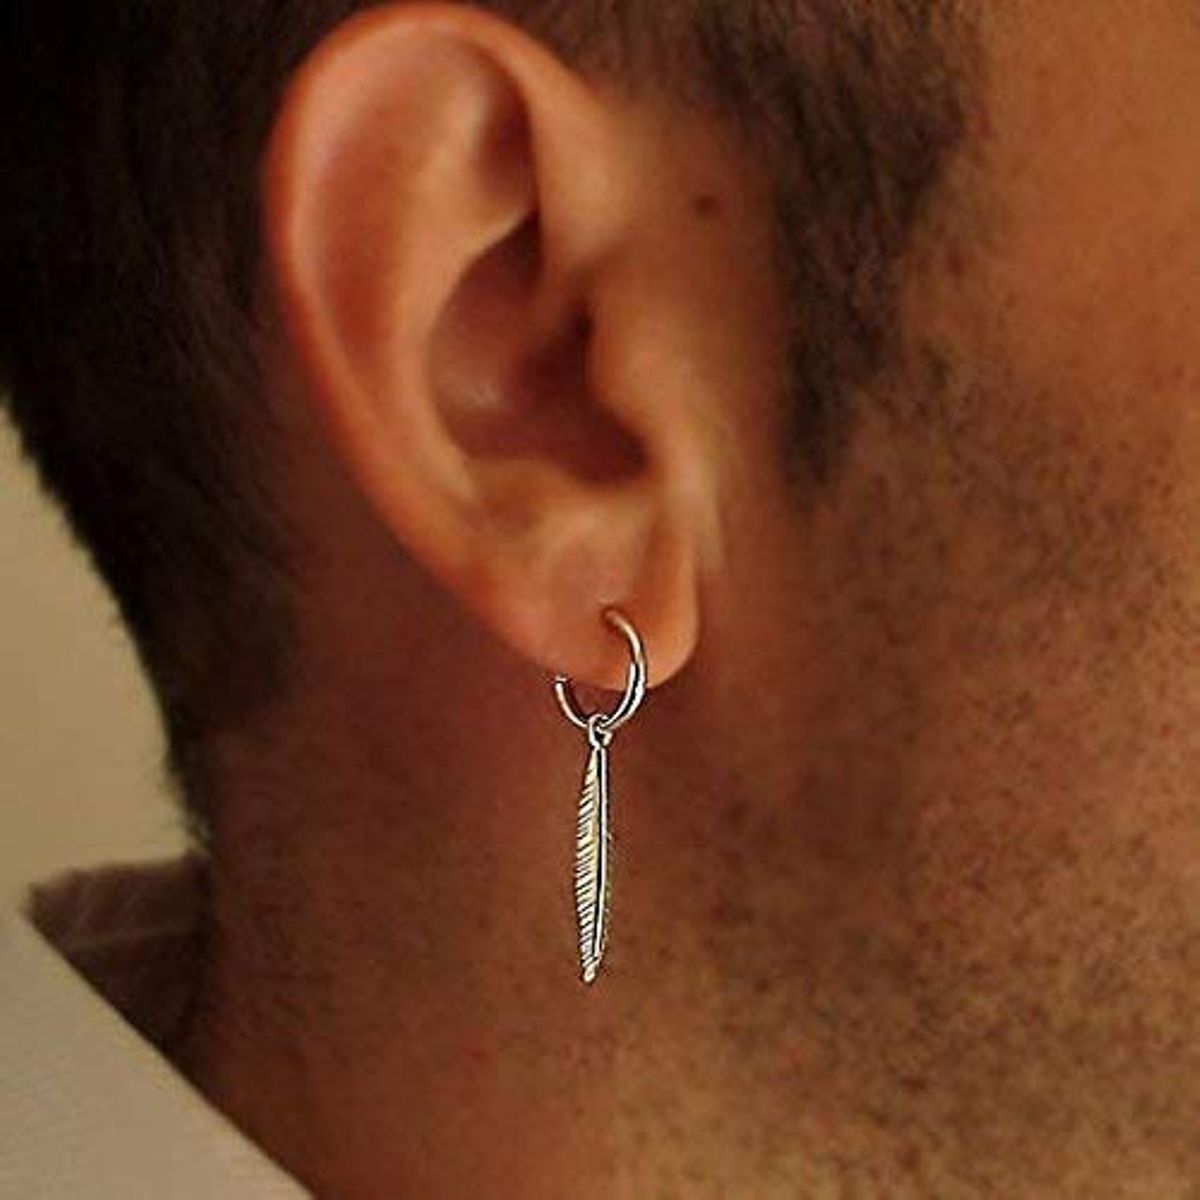 5 interesting reasons why men wear earrings